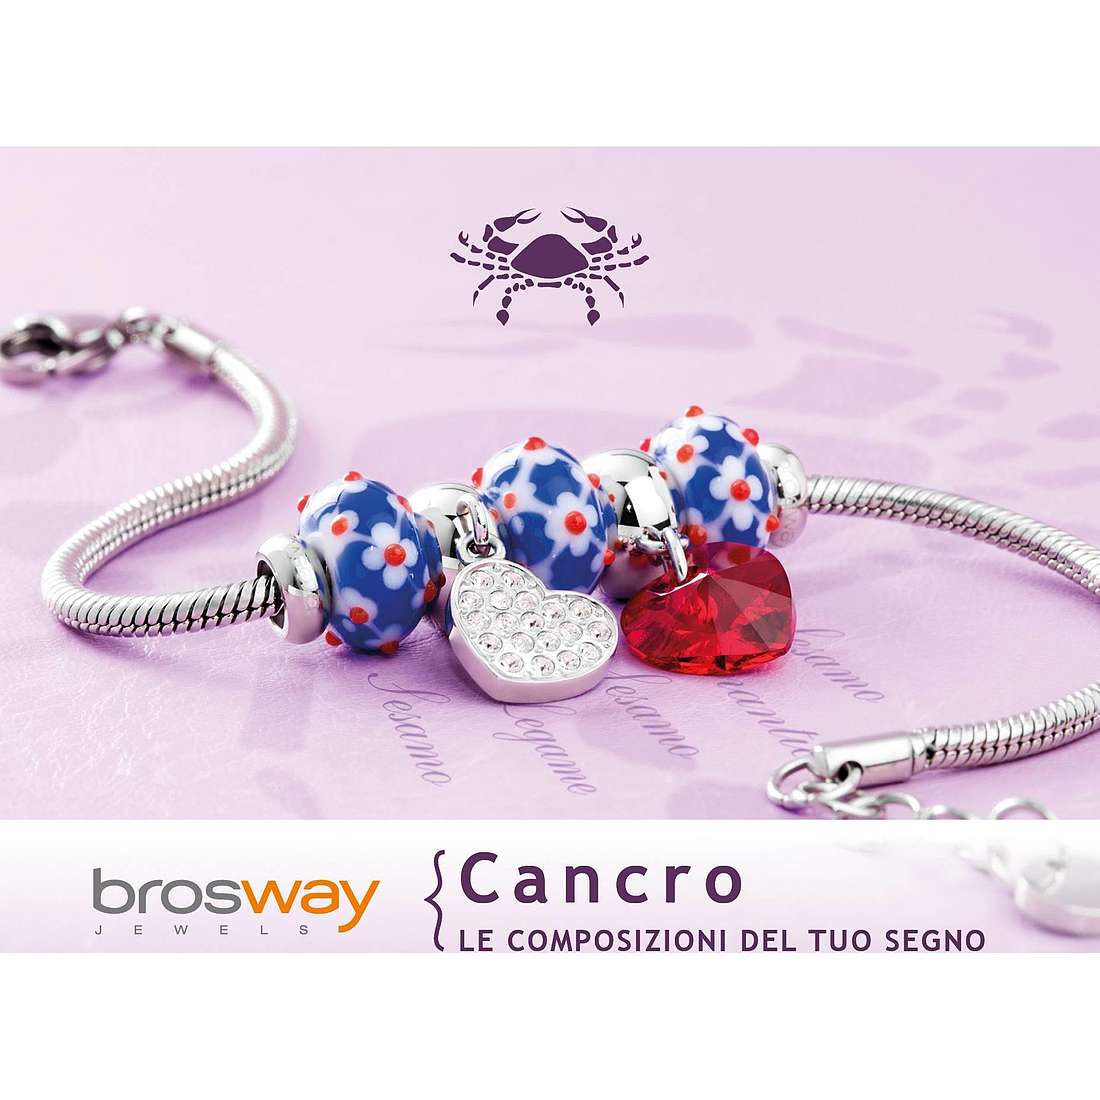 bracelet woman zodiac sign Cancer Brosway jewel Tres Jolie Mini BTJMZ04